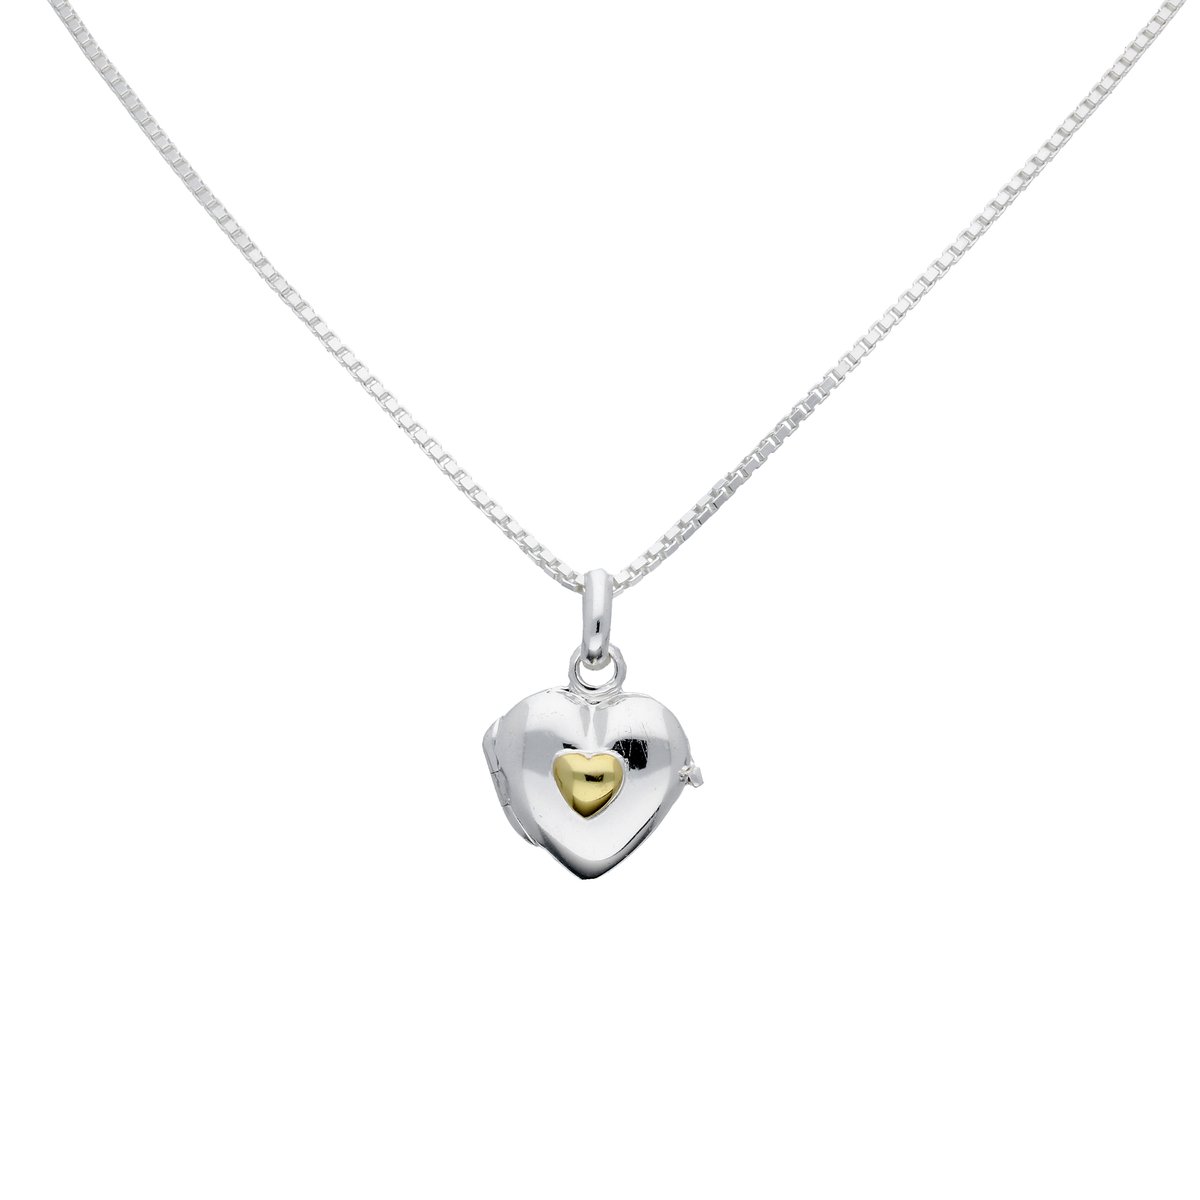 Classic&more -collier medaillon - zilver - hart met geel hart